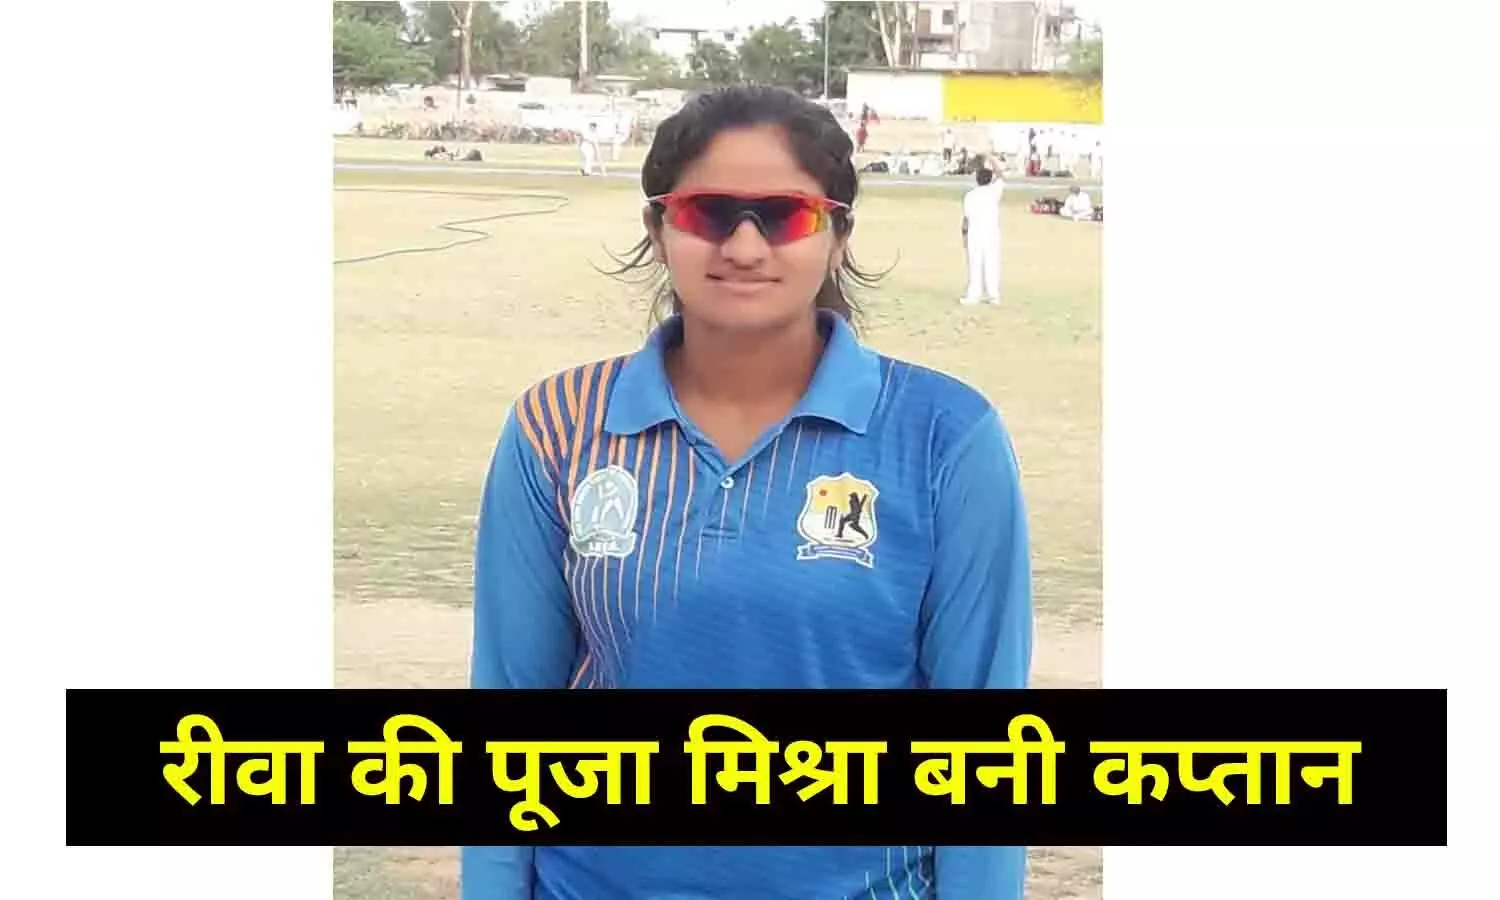 बल्ले और गेंद से कमाल दिखाएंगी महिला क्रिकेटर, रीवा की पूजा मिश्रा बनी कप्तान